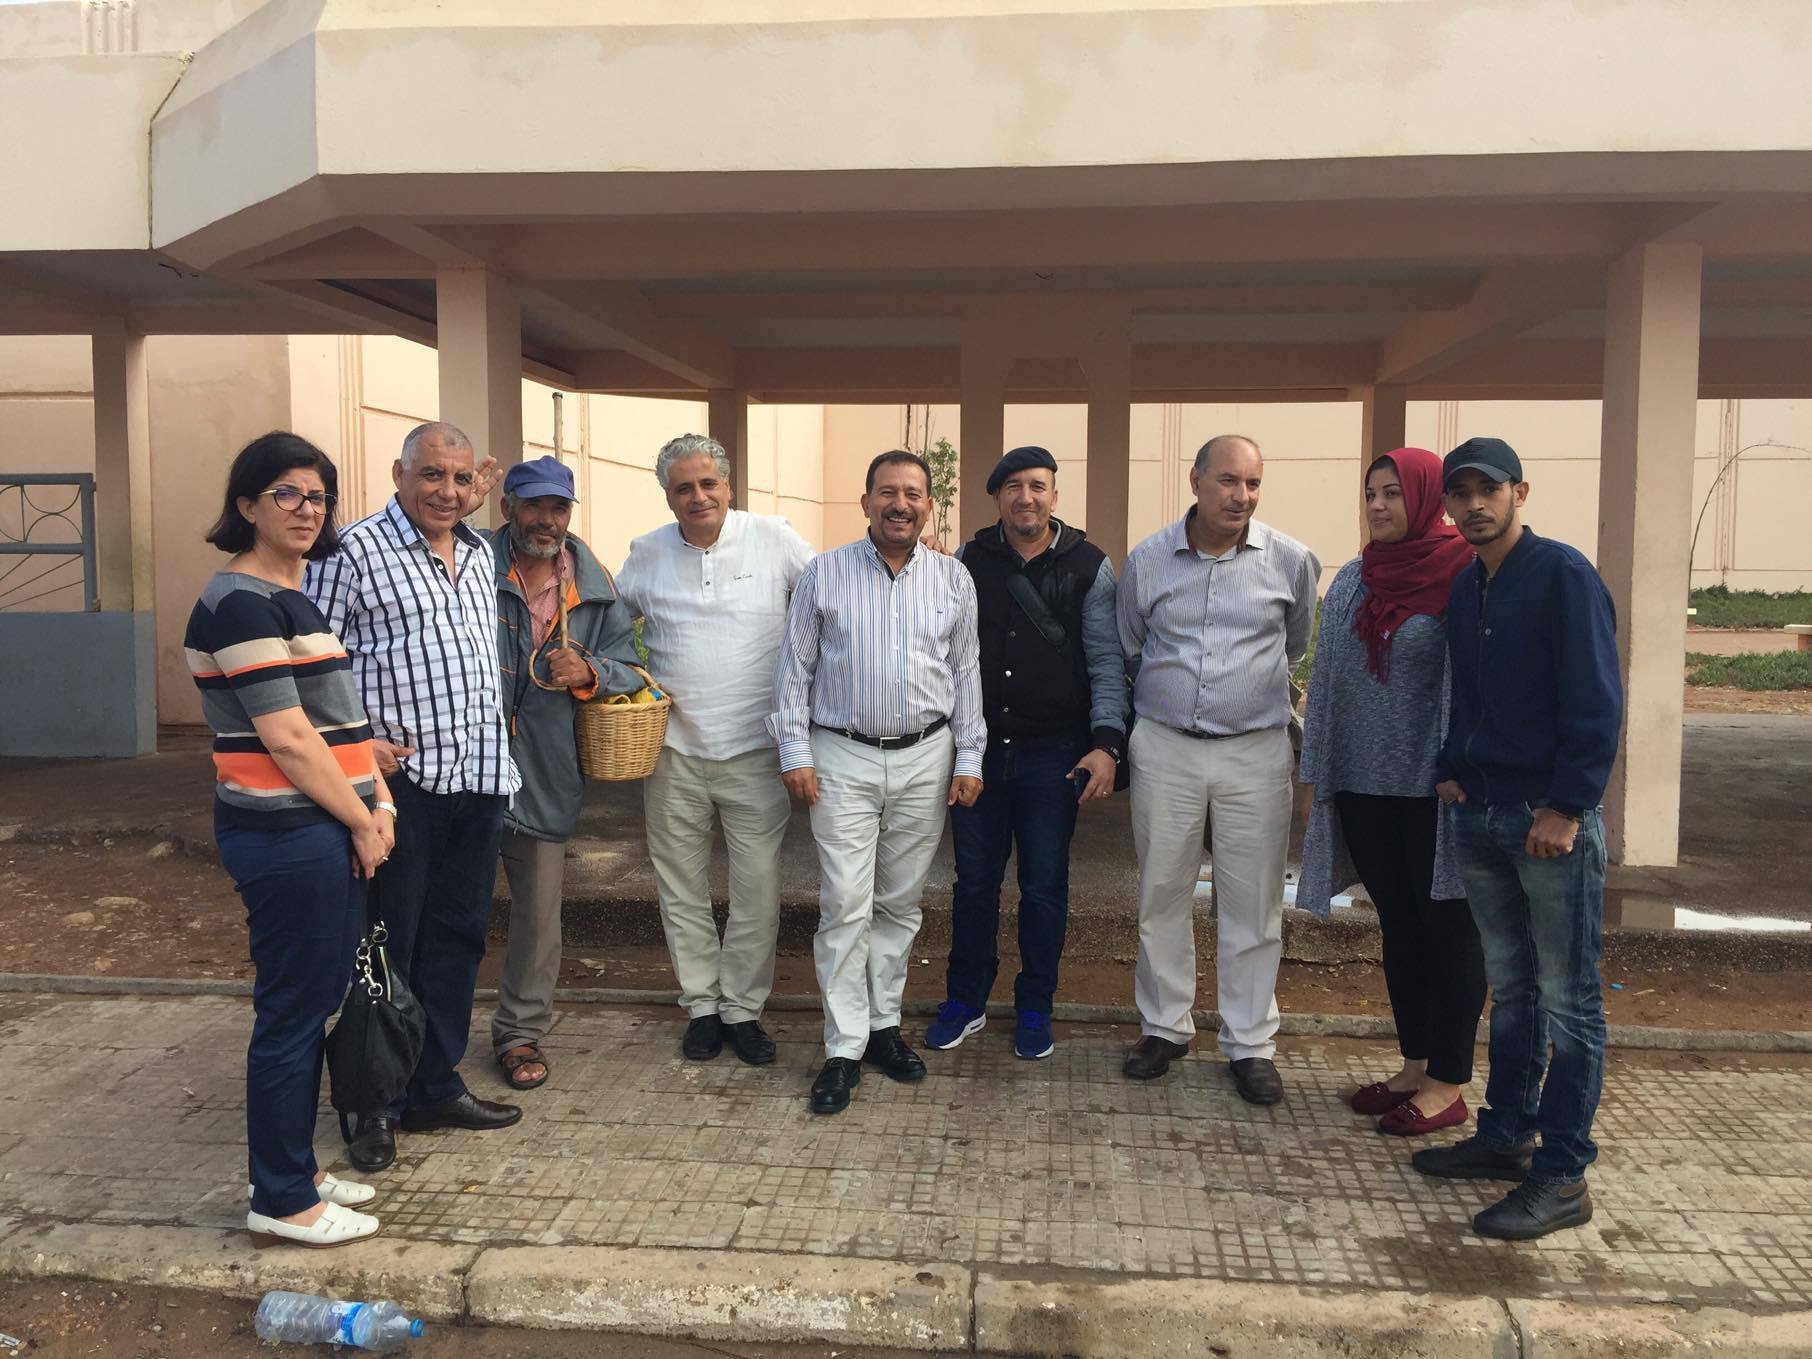 interception d’une délégation de militants associatifs tunisiens au Maroc